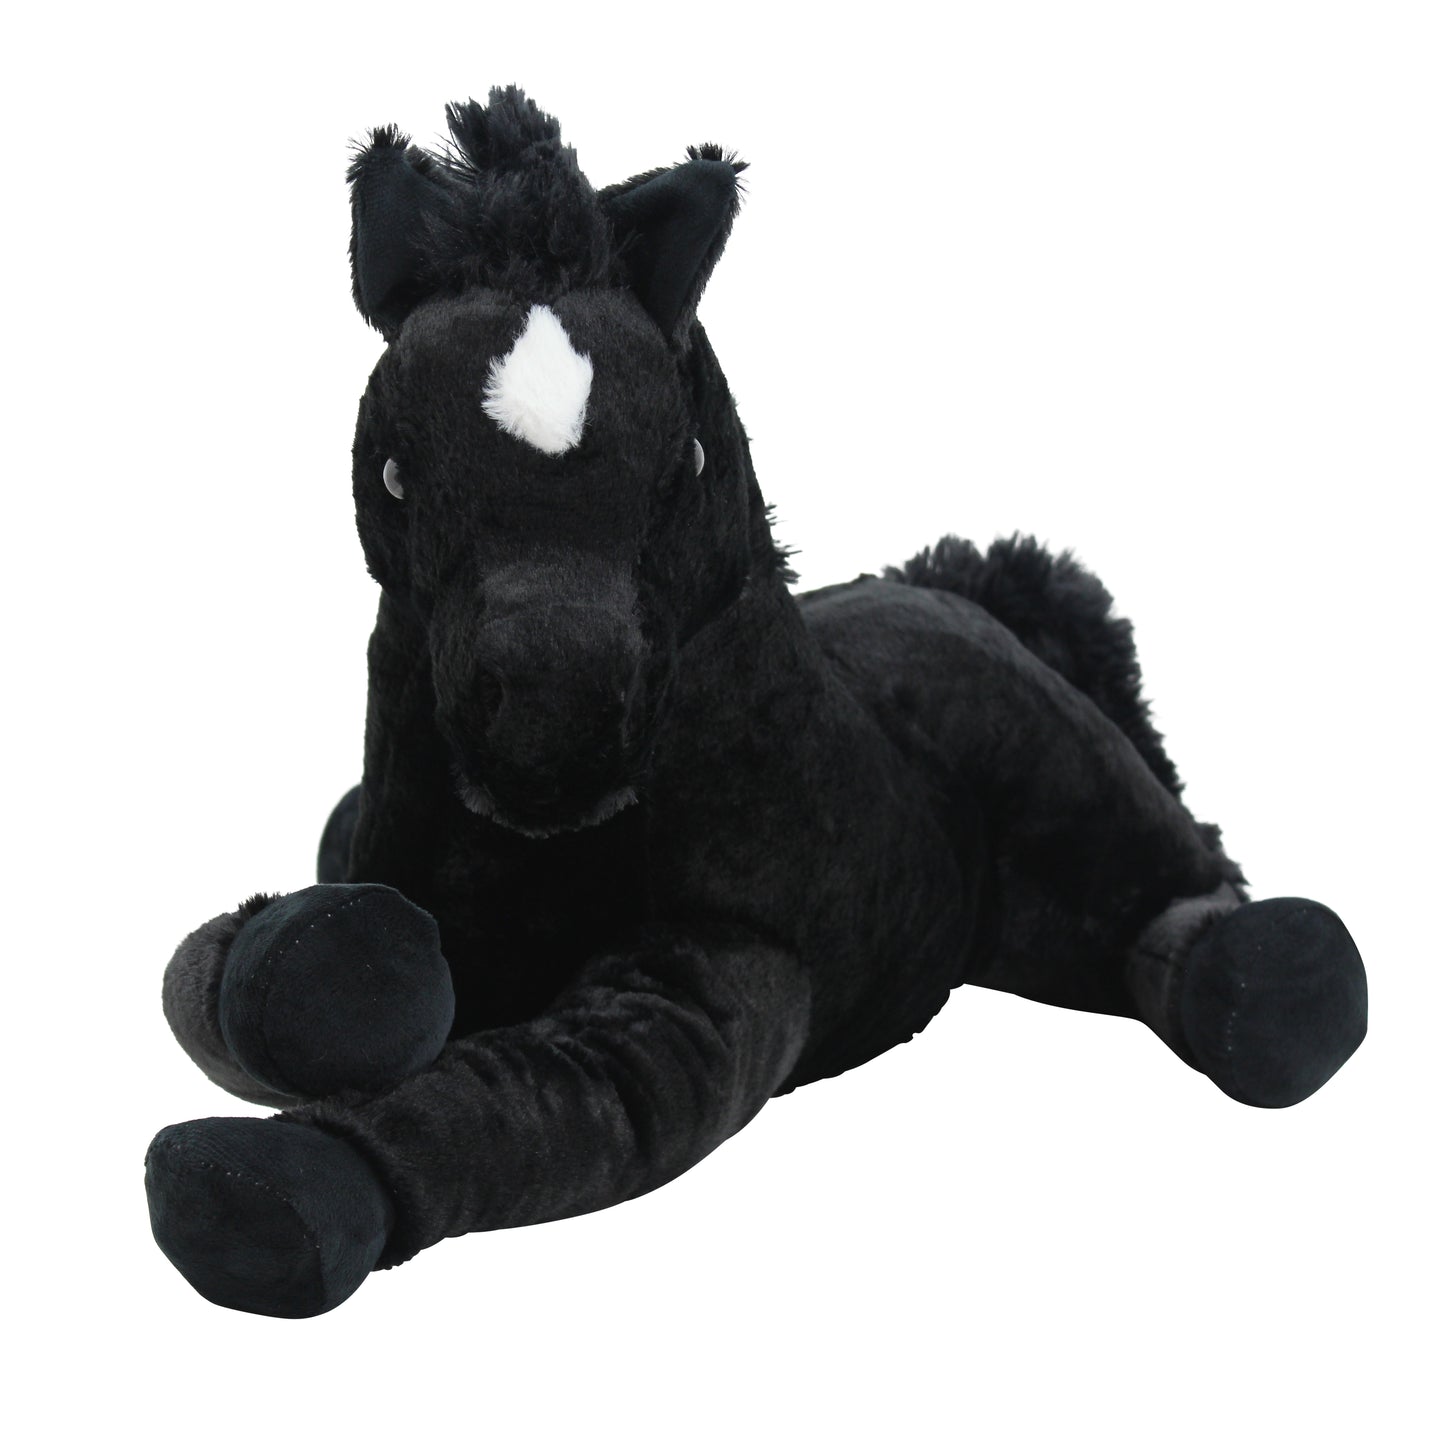 Sweety Toys 5185 Kuscheltier Pferd Fohlen schwarz Fohlen kuschelweich Plüschpferd liegend